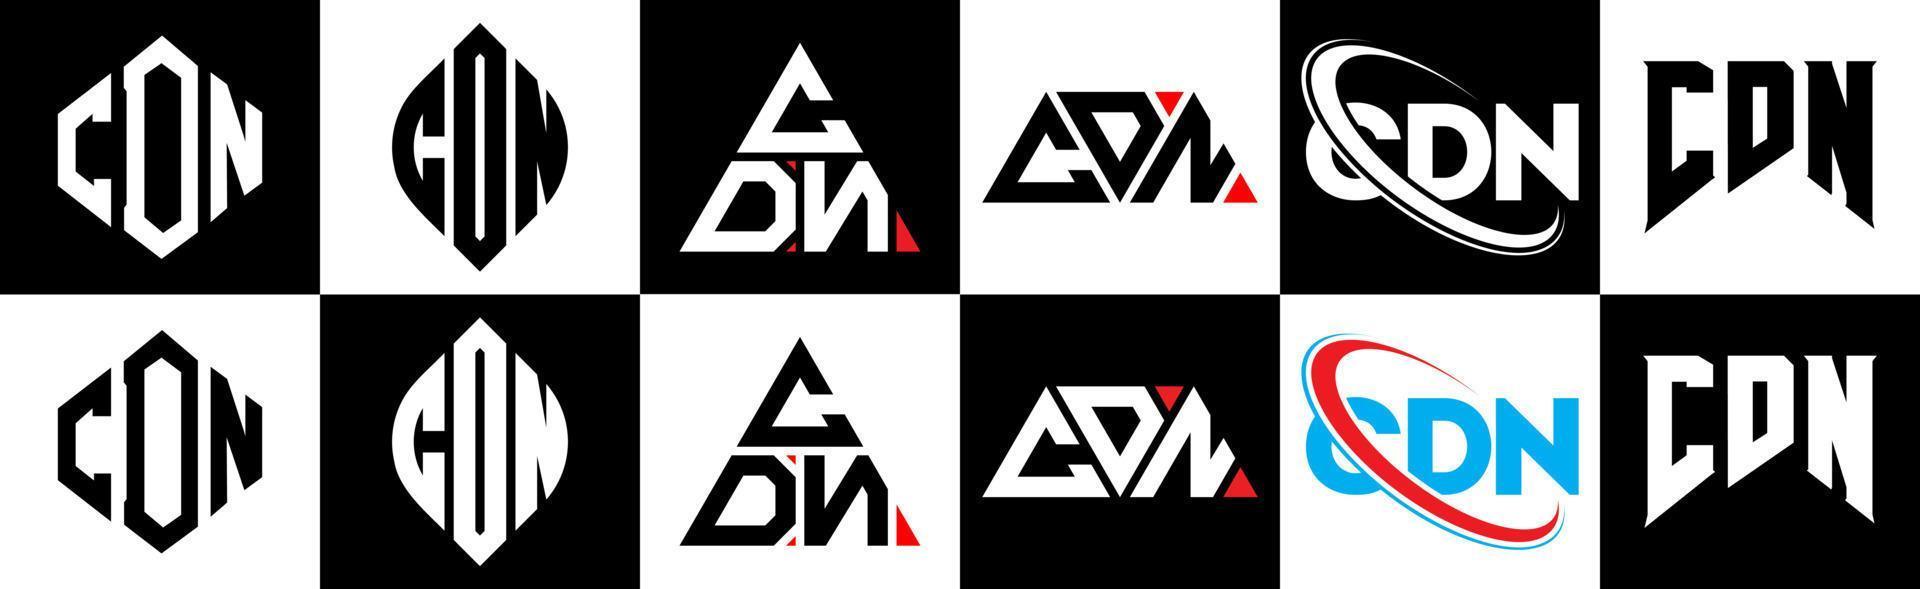 cdn brief logo ontwerp in zes stijl. cdn veelhoek, cirkel, driehoek, zeshoek, vlak en gemakkelijk stijl met zwart en wit kleur variatie brief logo reeks in een tekengebied. cdn minimalistische en klassiek logo vector